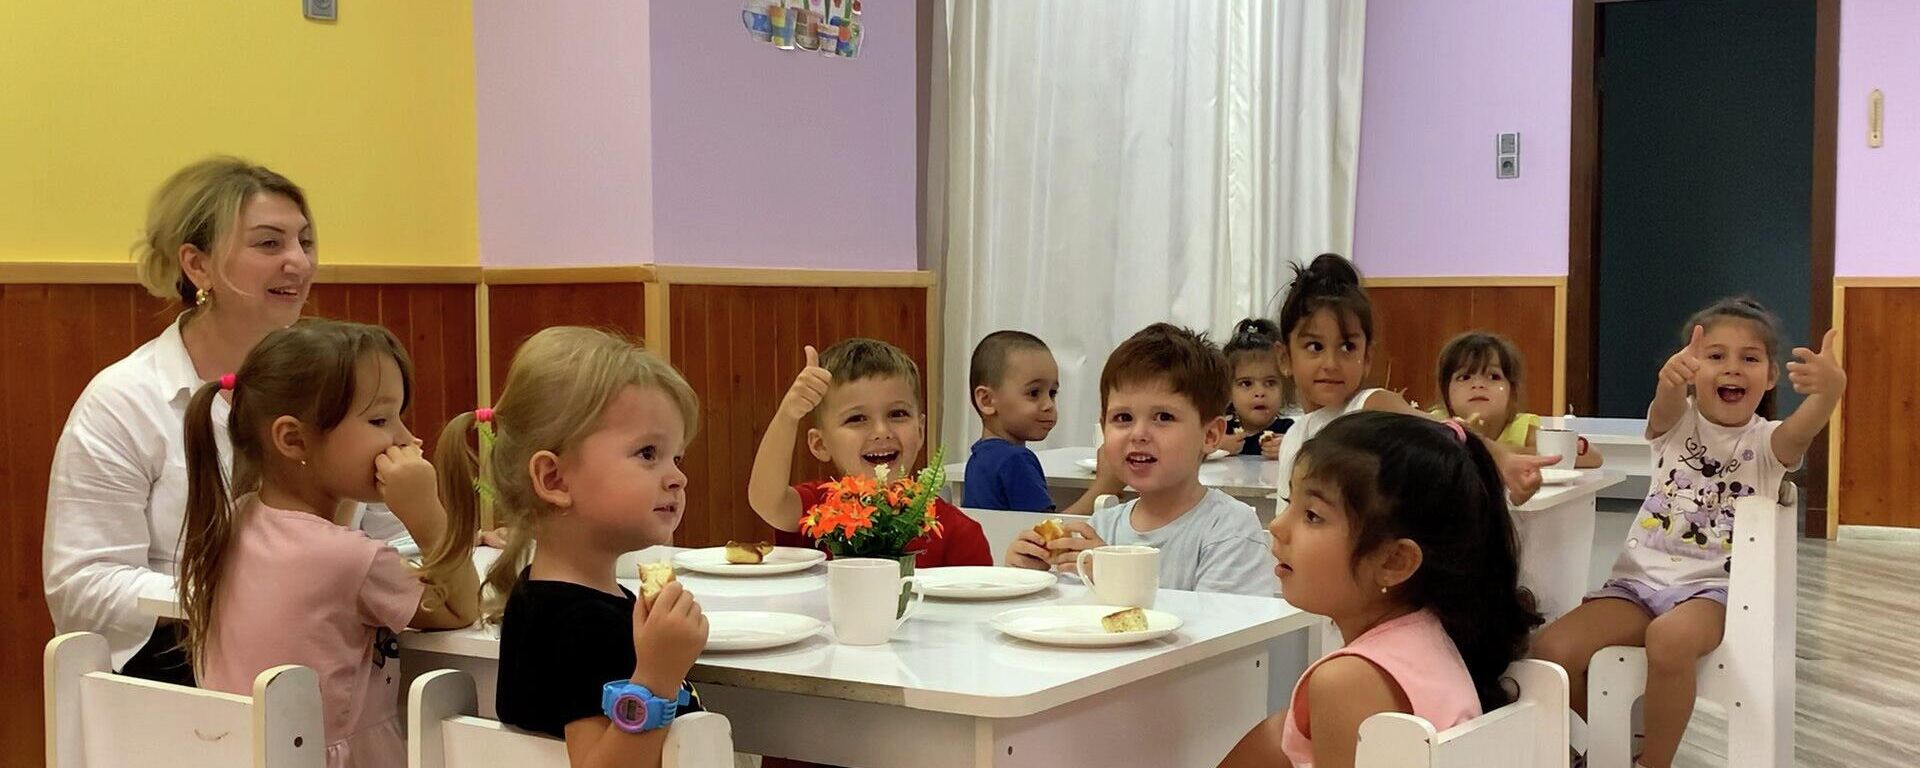 Директор детского сада в Баку: с родителями сложнее работать, чем с детьми - Sputnik Азербайджан, 1920, 02.09.2022